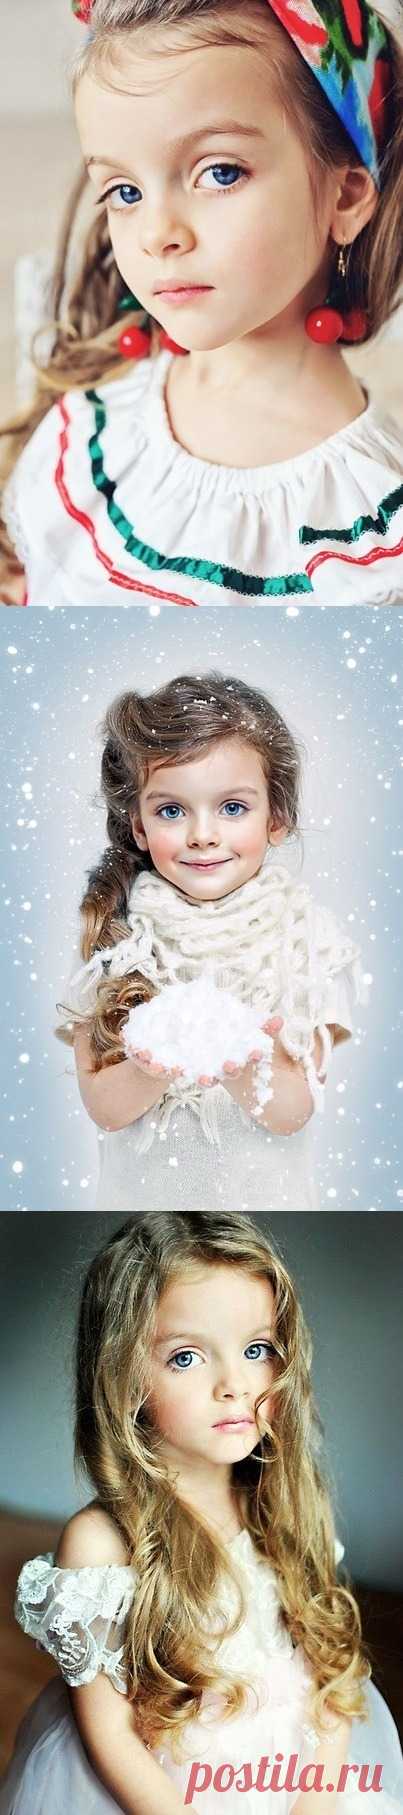 Ребенок-модель Милана Курникова. Нереальные глаза у девочки